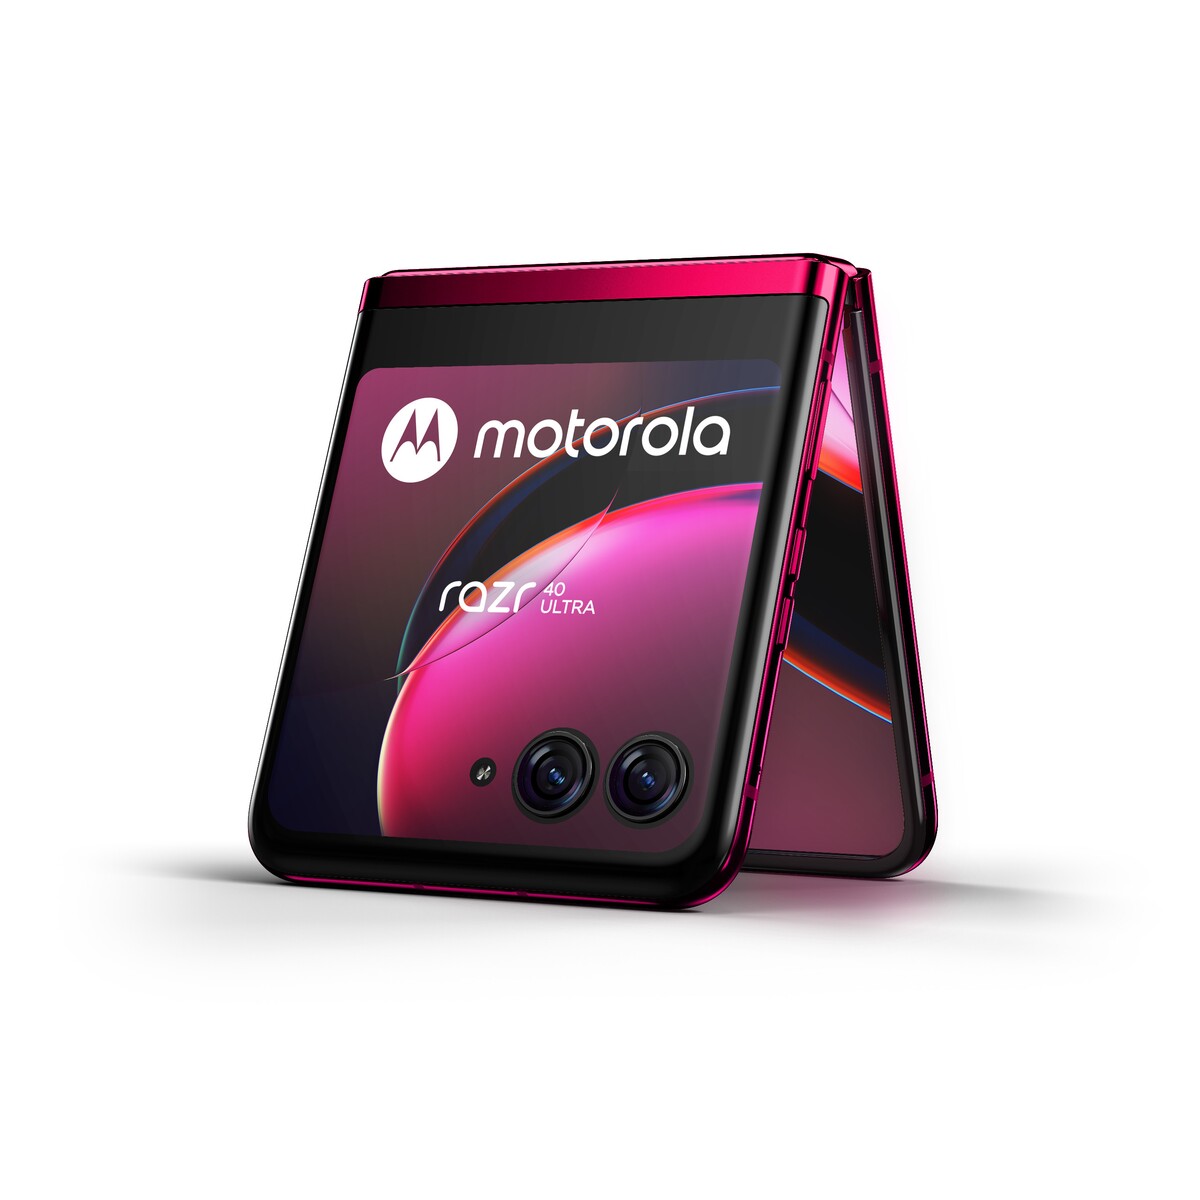 Motorola Razr 40 Ultra disponuje veľkým vonkajším displejom, ktorý ti umožní prístup k rôznym aplikáciám.